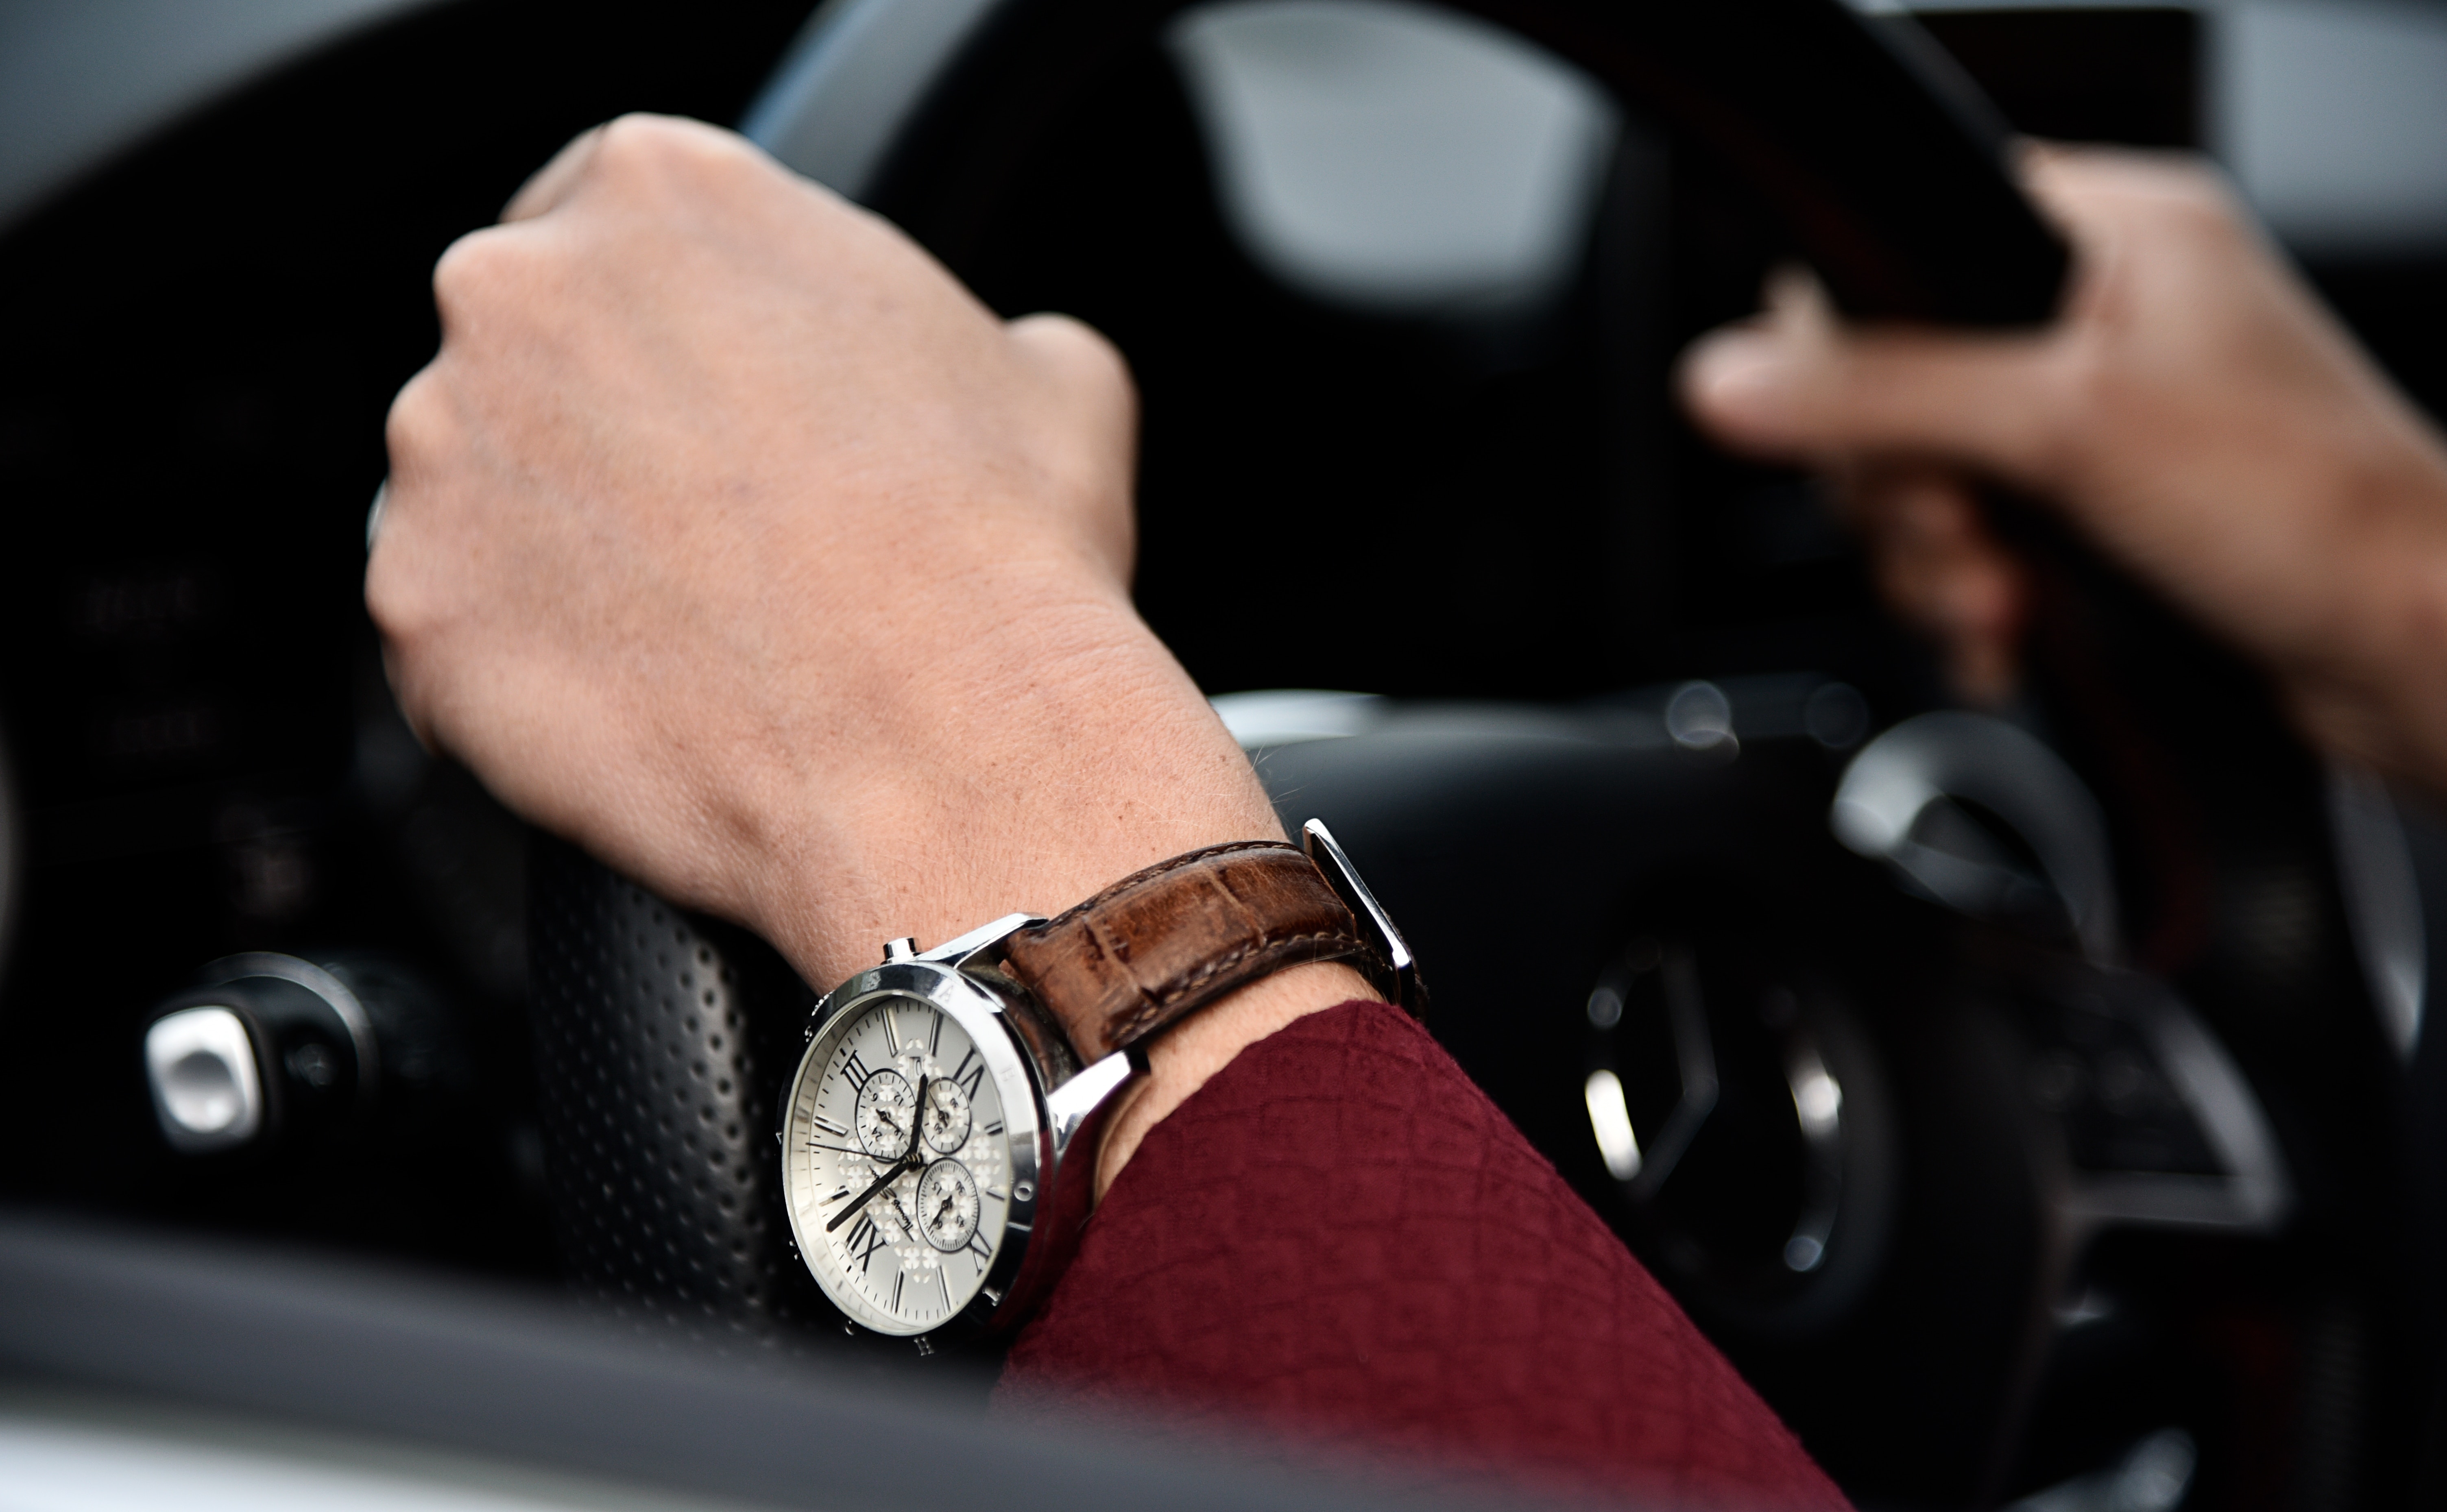 Часы за станком 5. Часы на руке. Мужская рука с часами за рулем. Часы на руке мужчины в авто. Дорогие часы на руке.